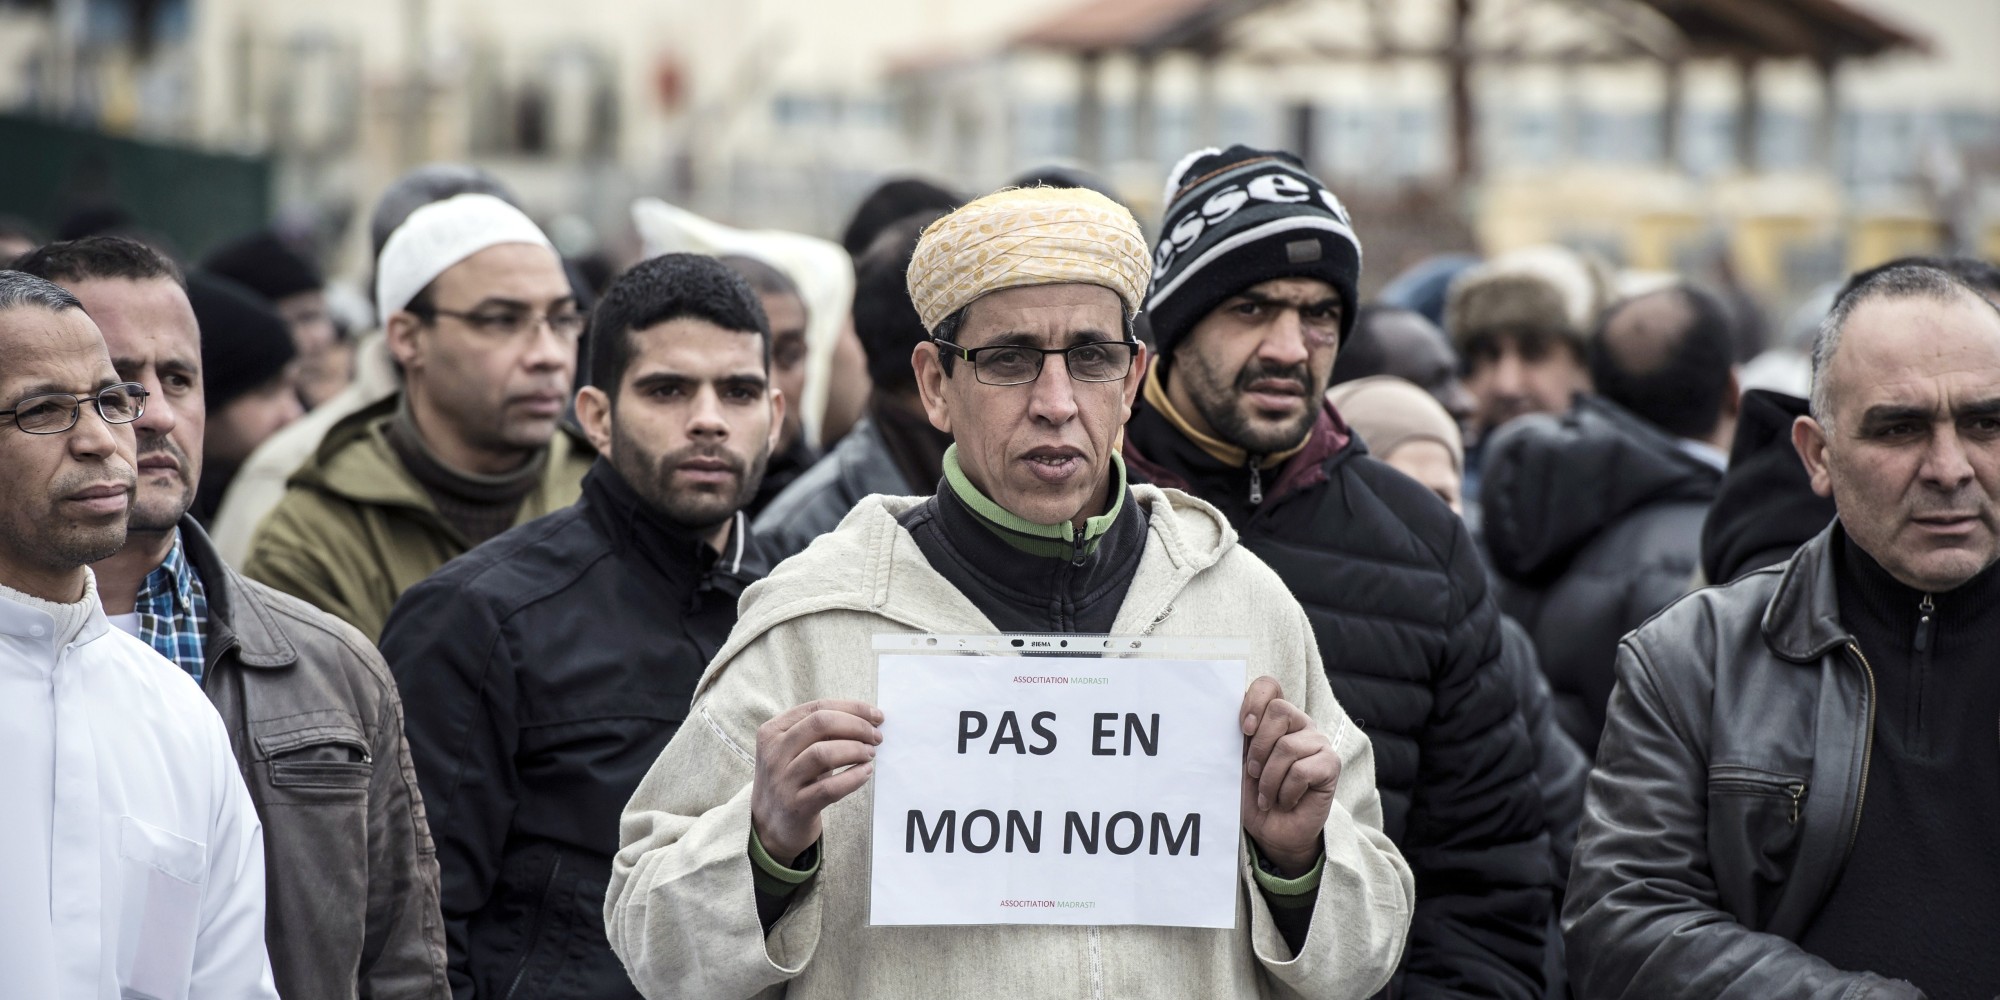 Francia Islam Musulmanes Laicismo